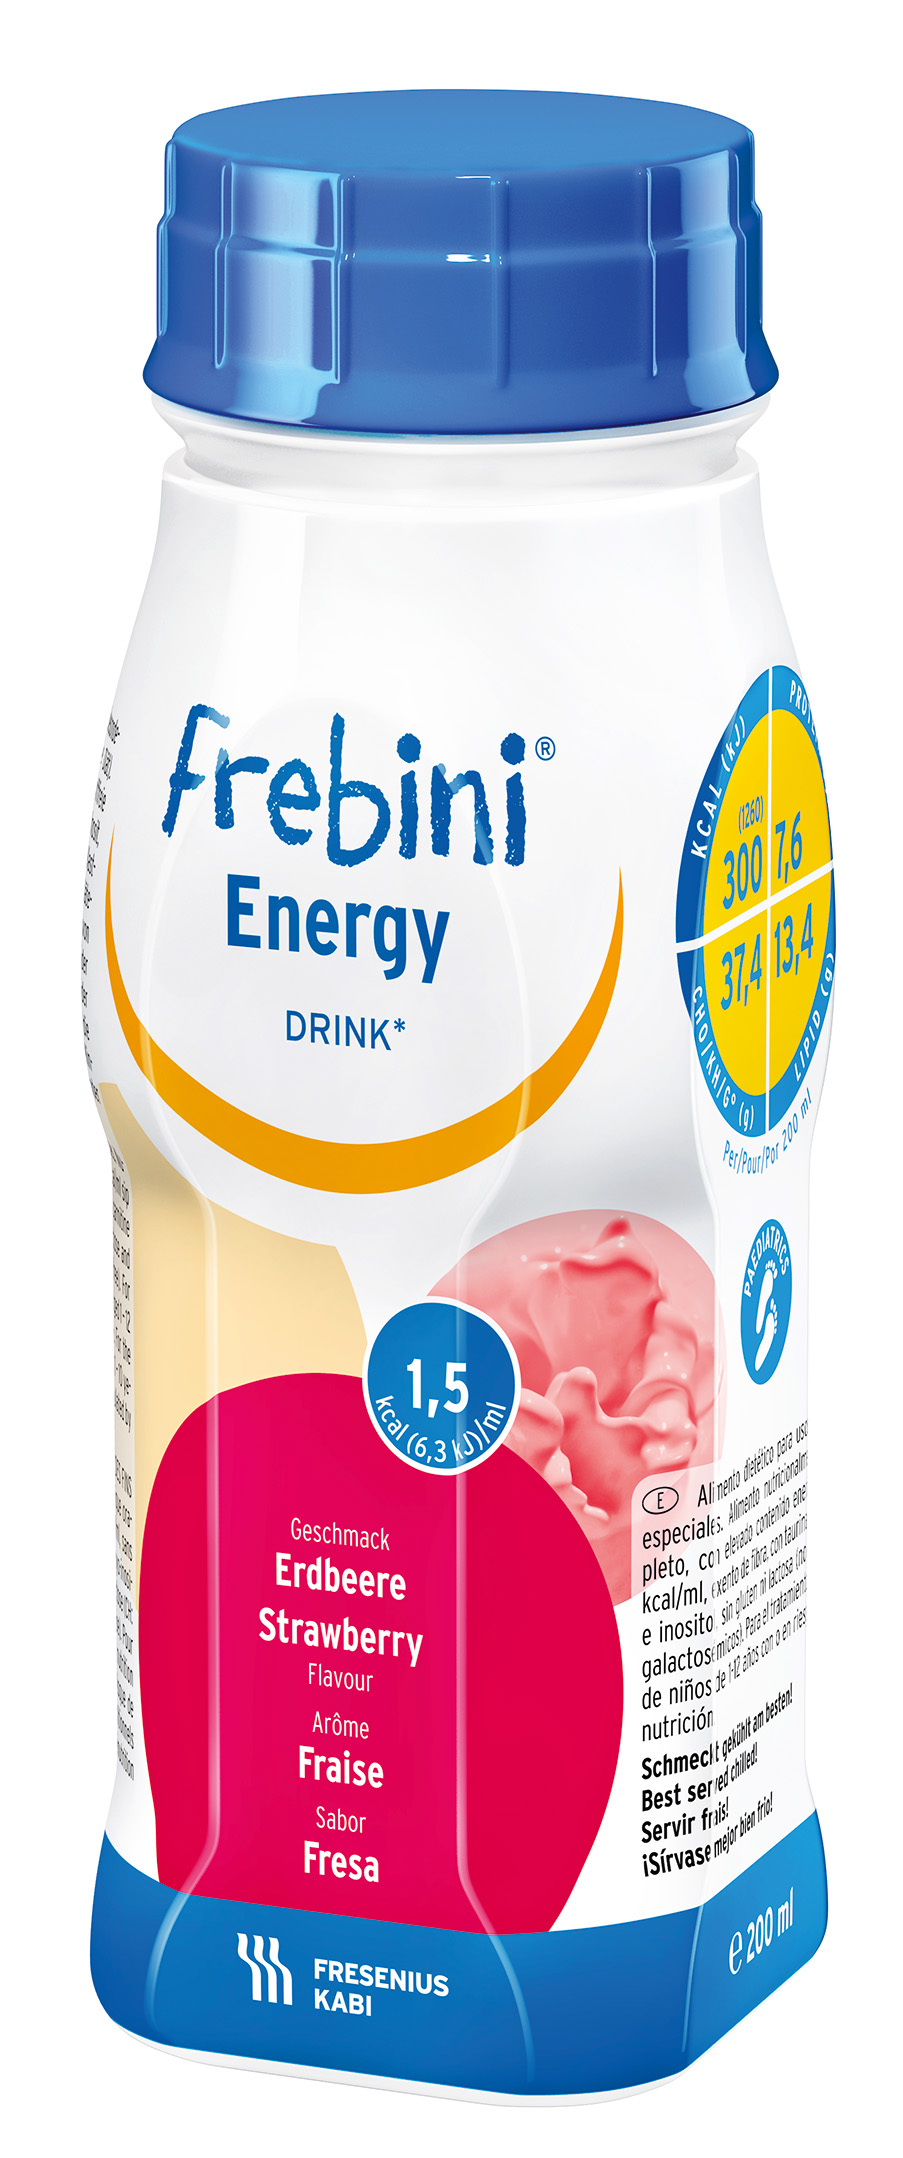 Frebini Energy Drink, Næringsdrikk  jordbær, 4x200 ml